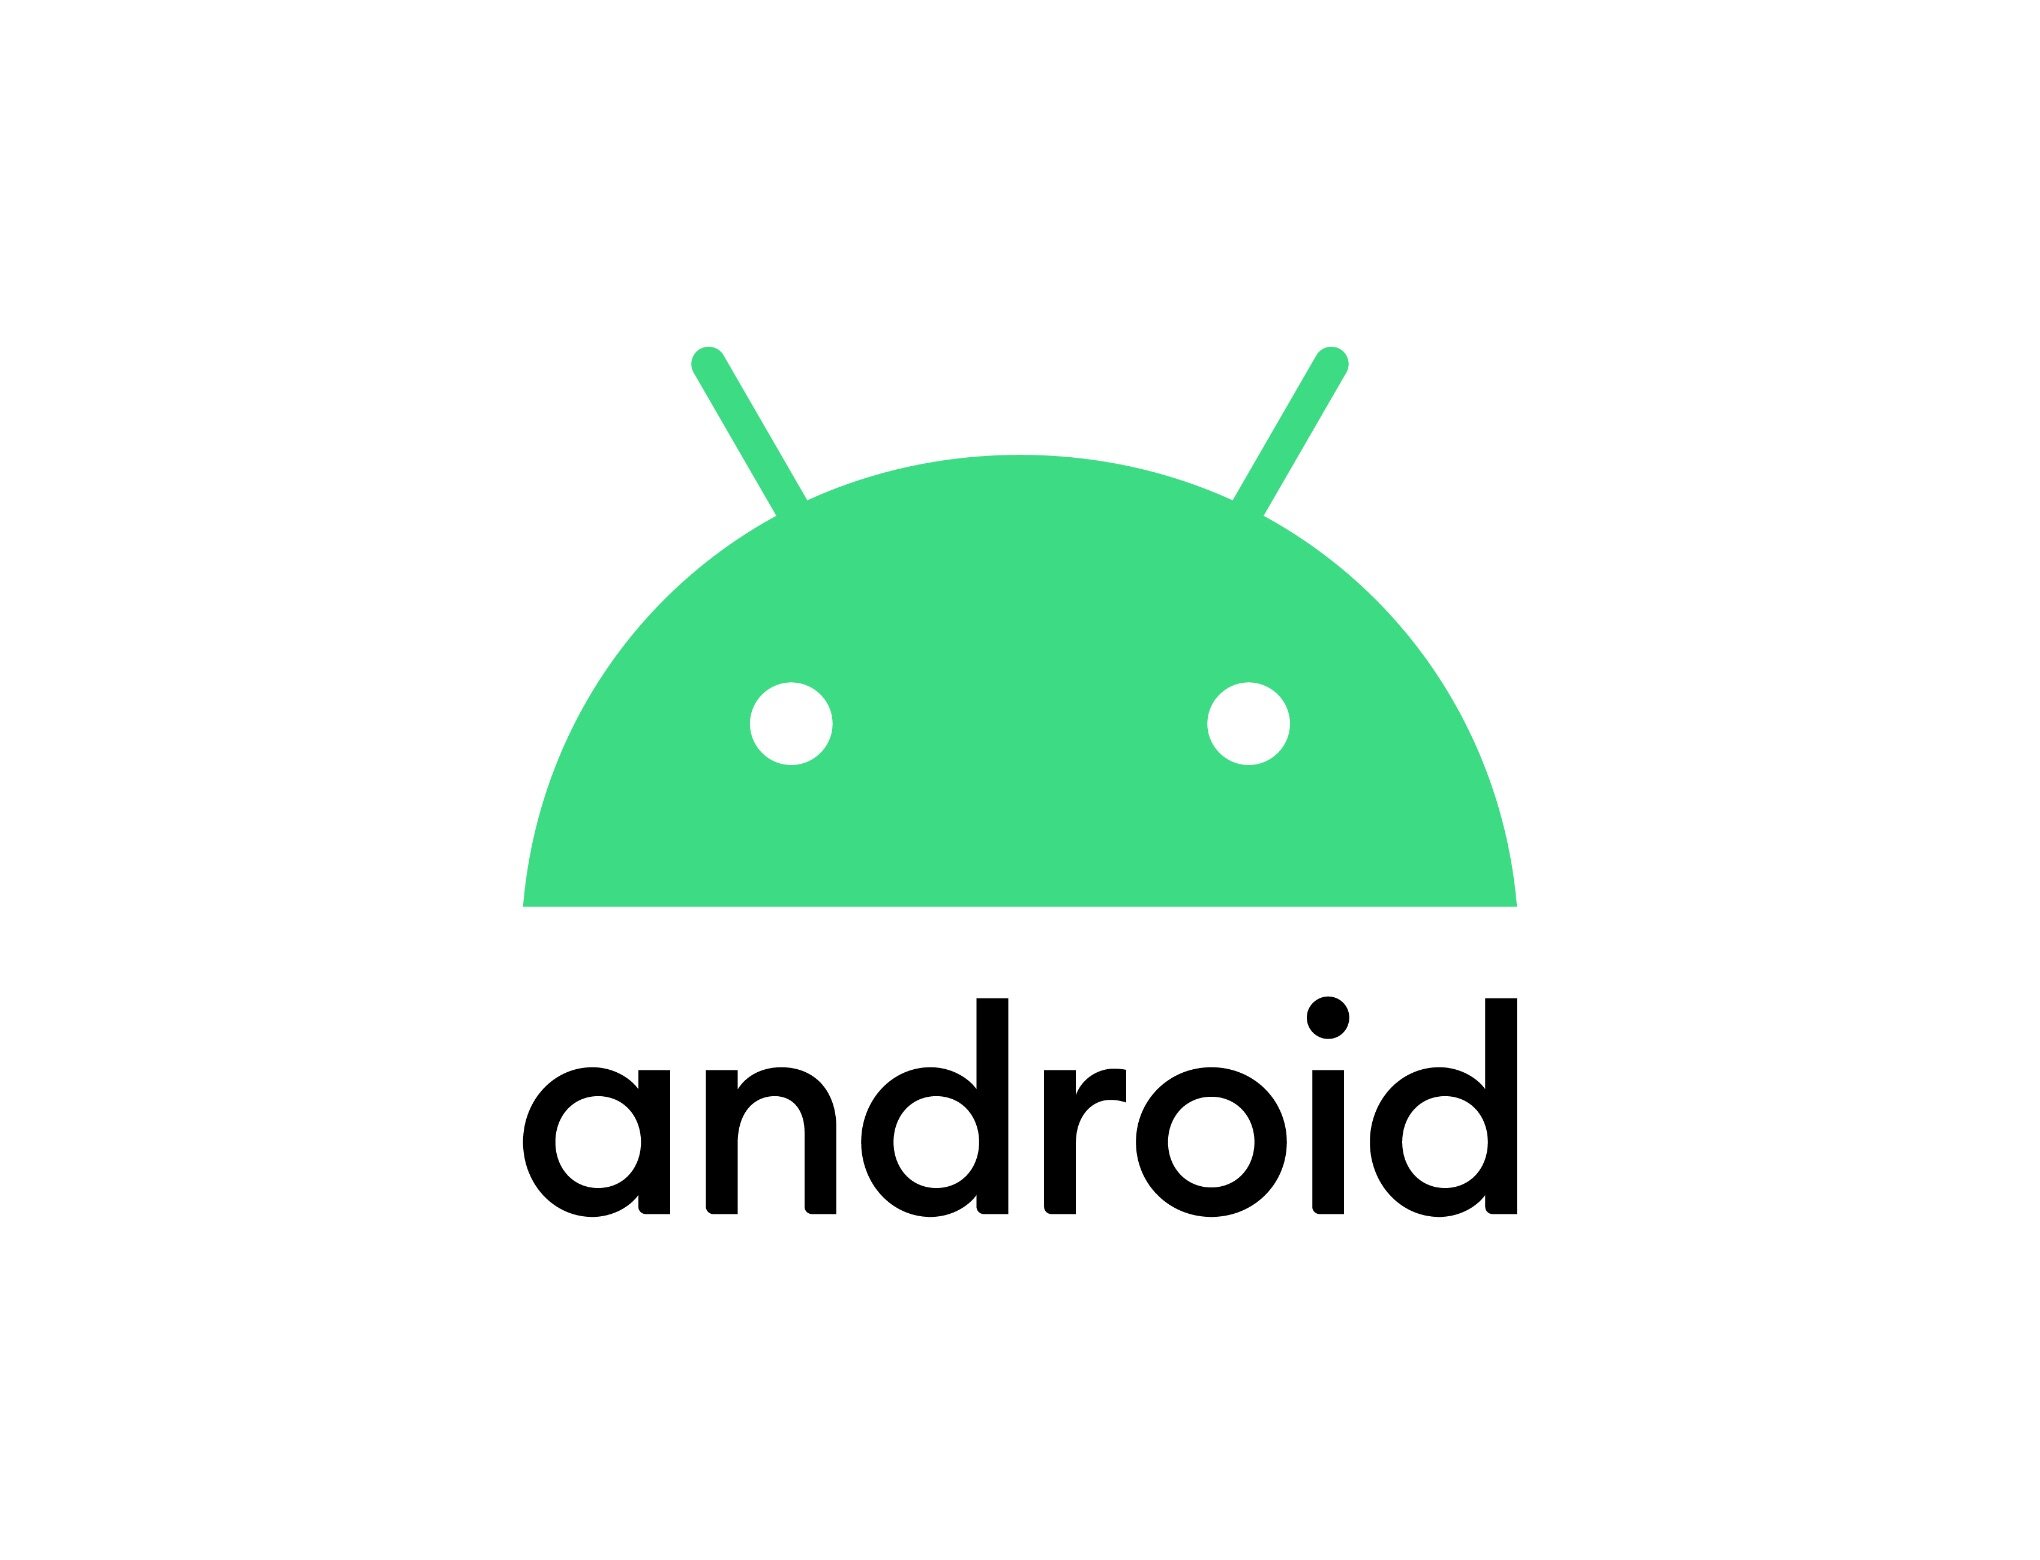 За семь месяцев Android 10 смогла занять всего 8,2% рынка, лидирует Android 9 с долей 31,3% - ITC.ua